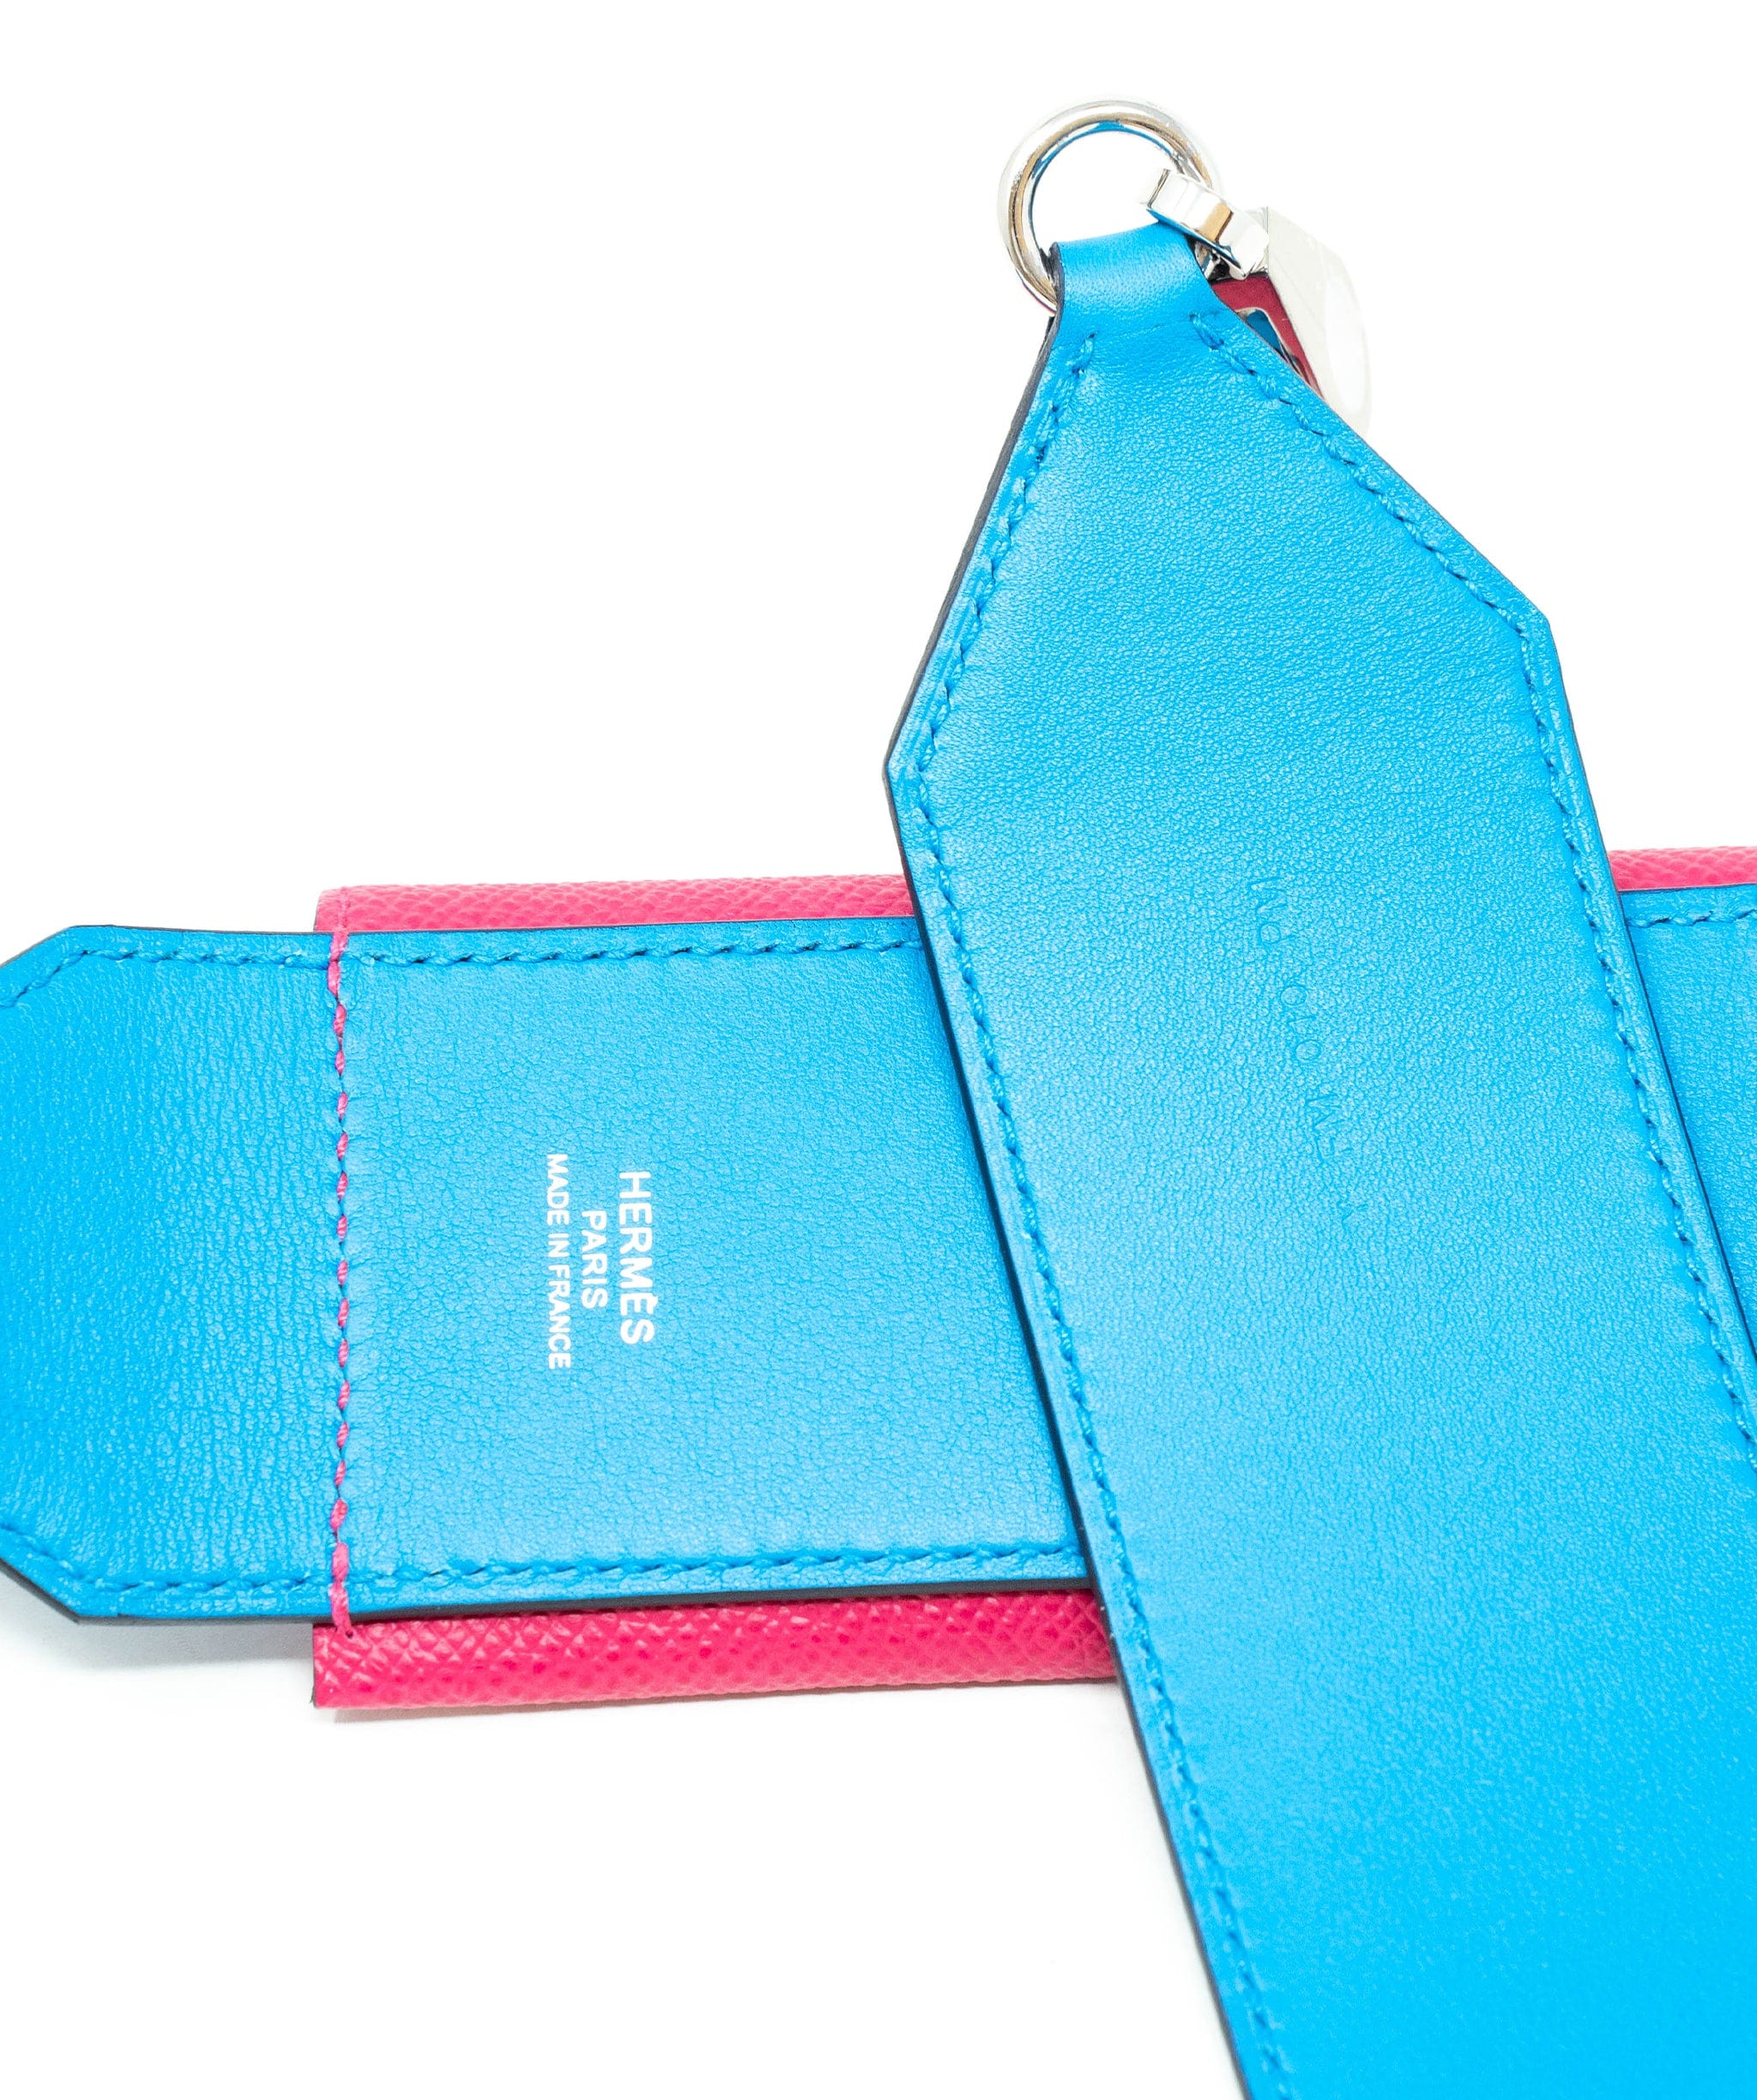 Hermès Hermes Kelly pocket strap in vibrant blue frida